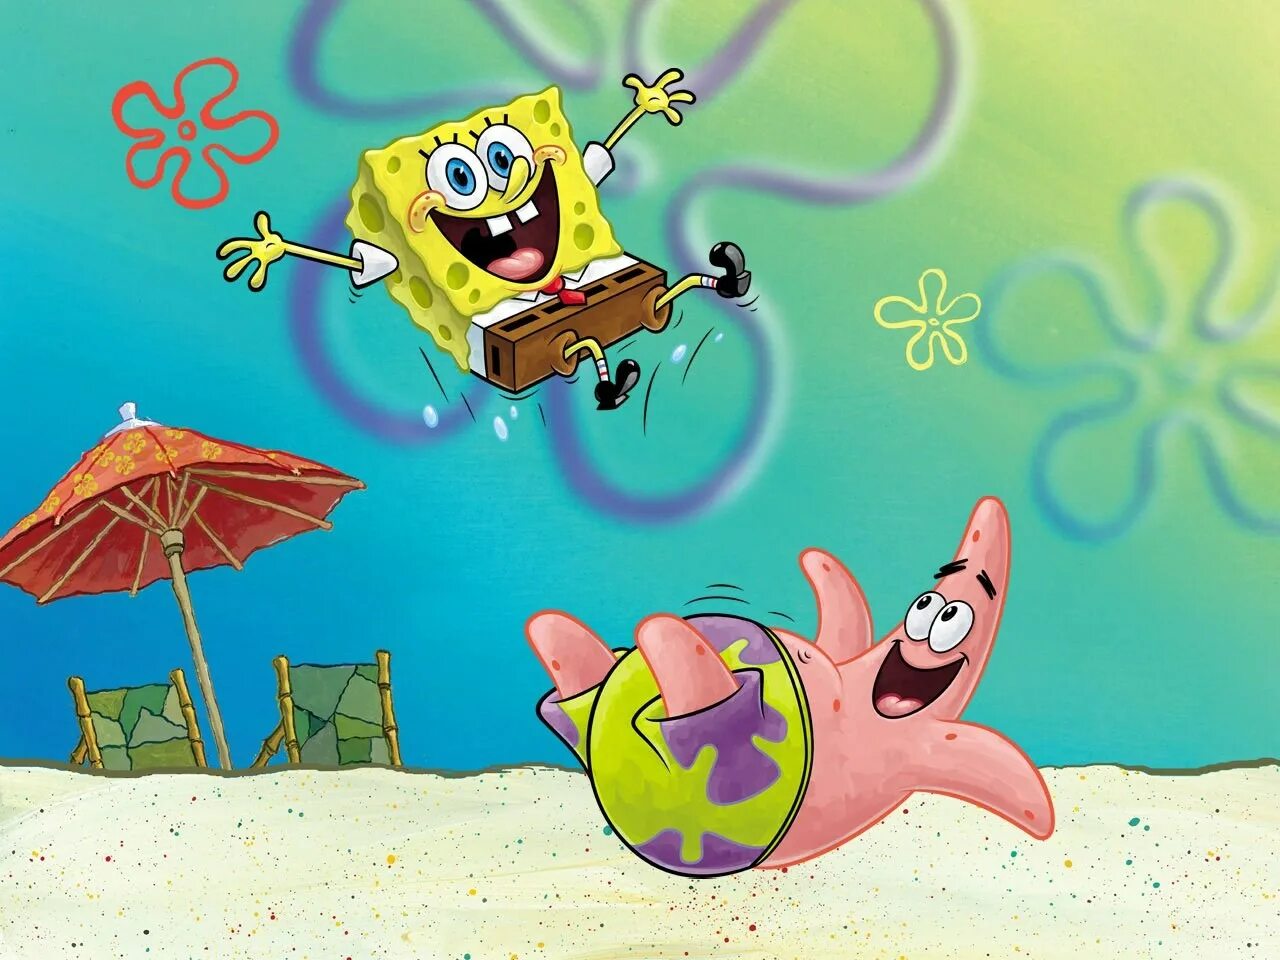 Spongebob patrick. Губка Боб квадратные штаны Патрик. Кука Боб кваратные штаны.